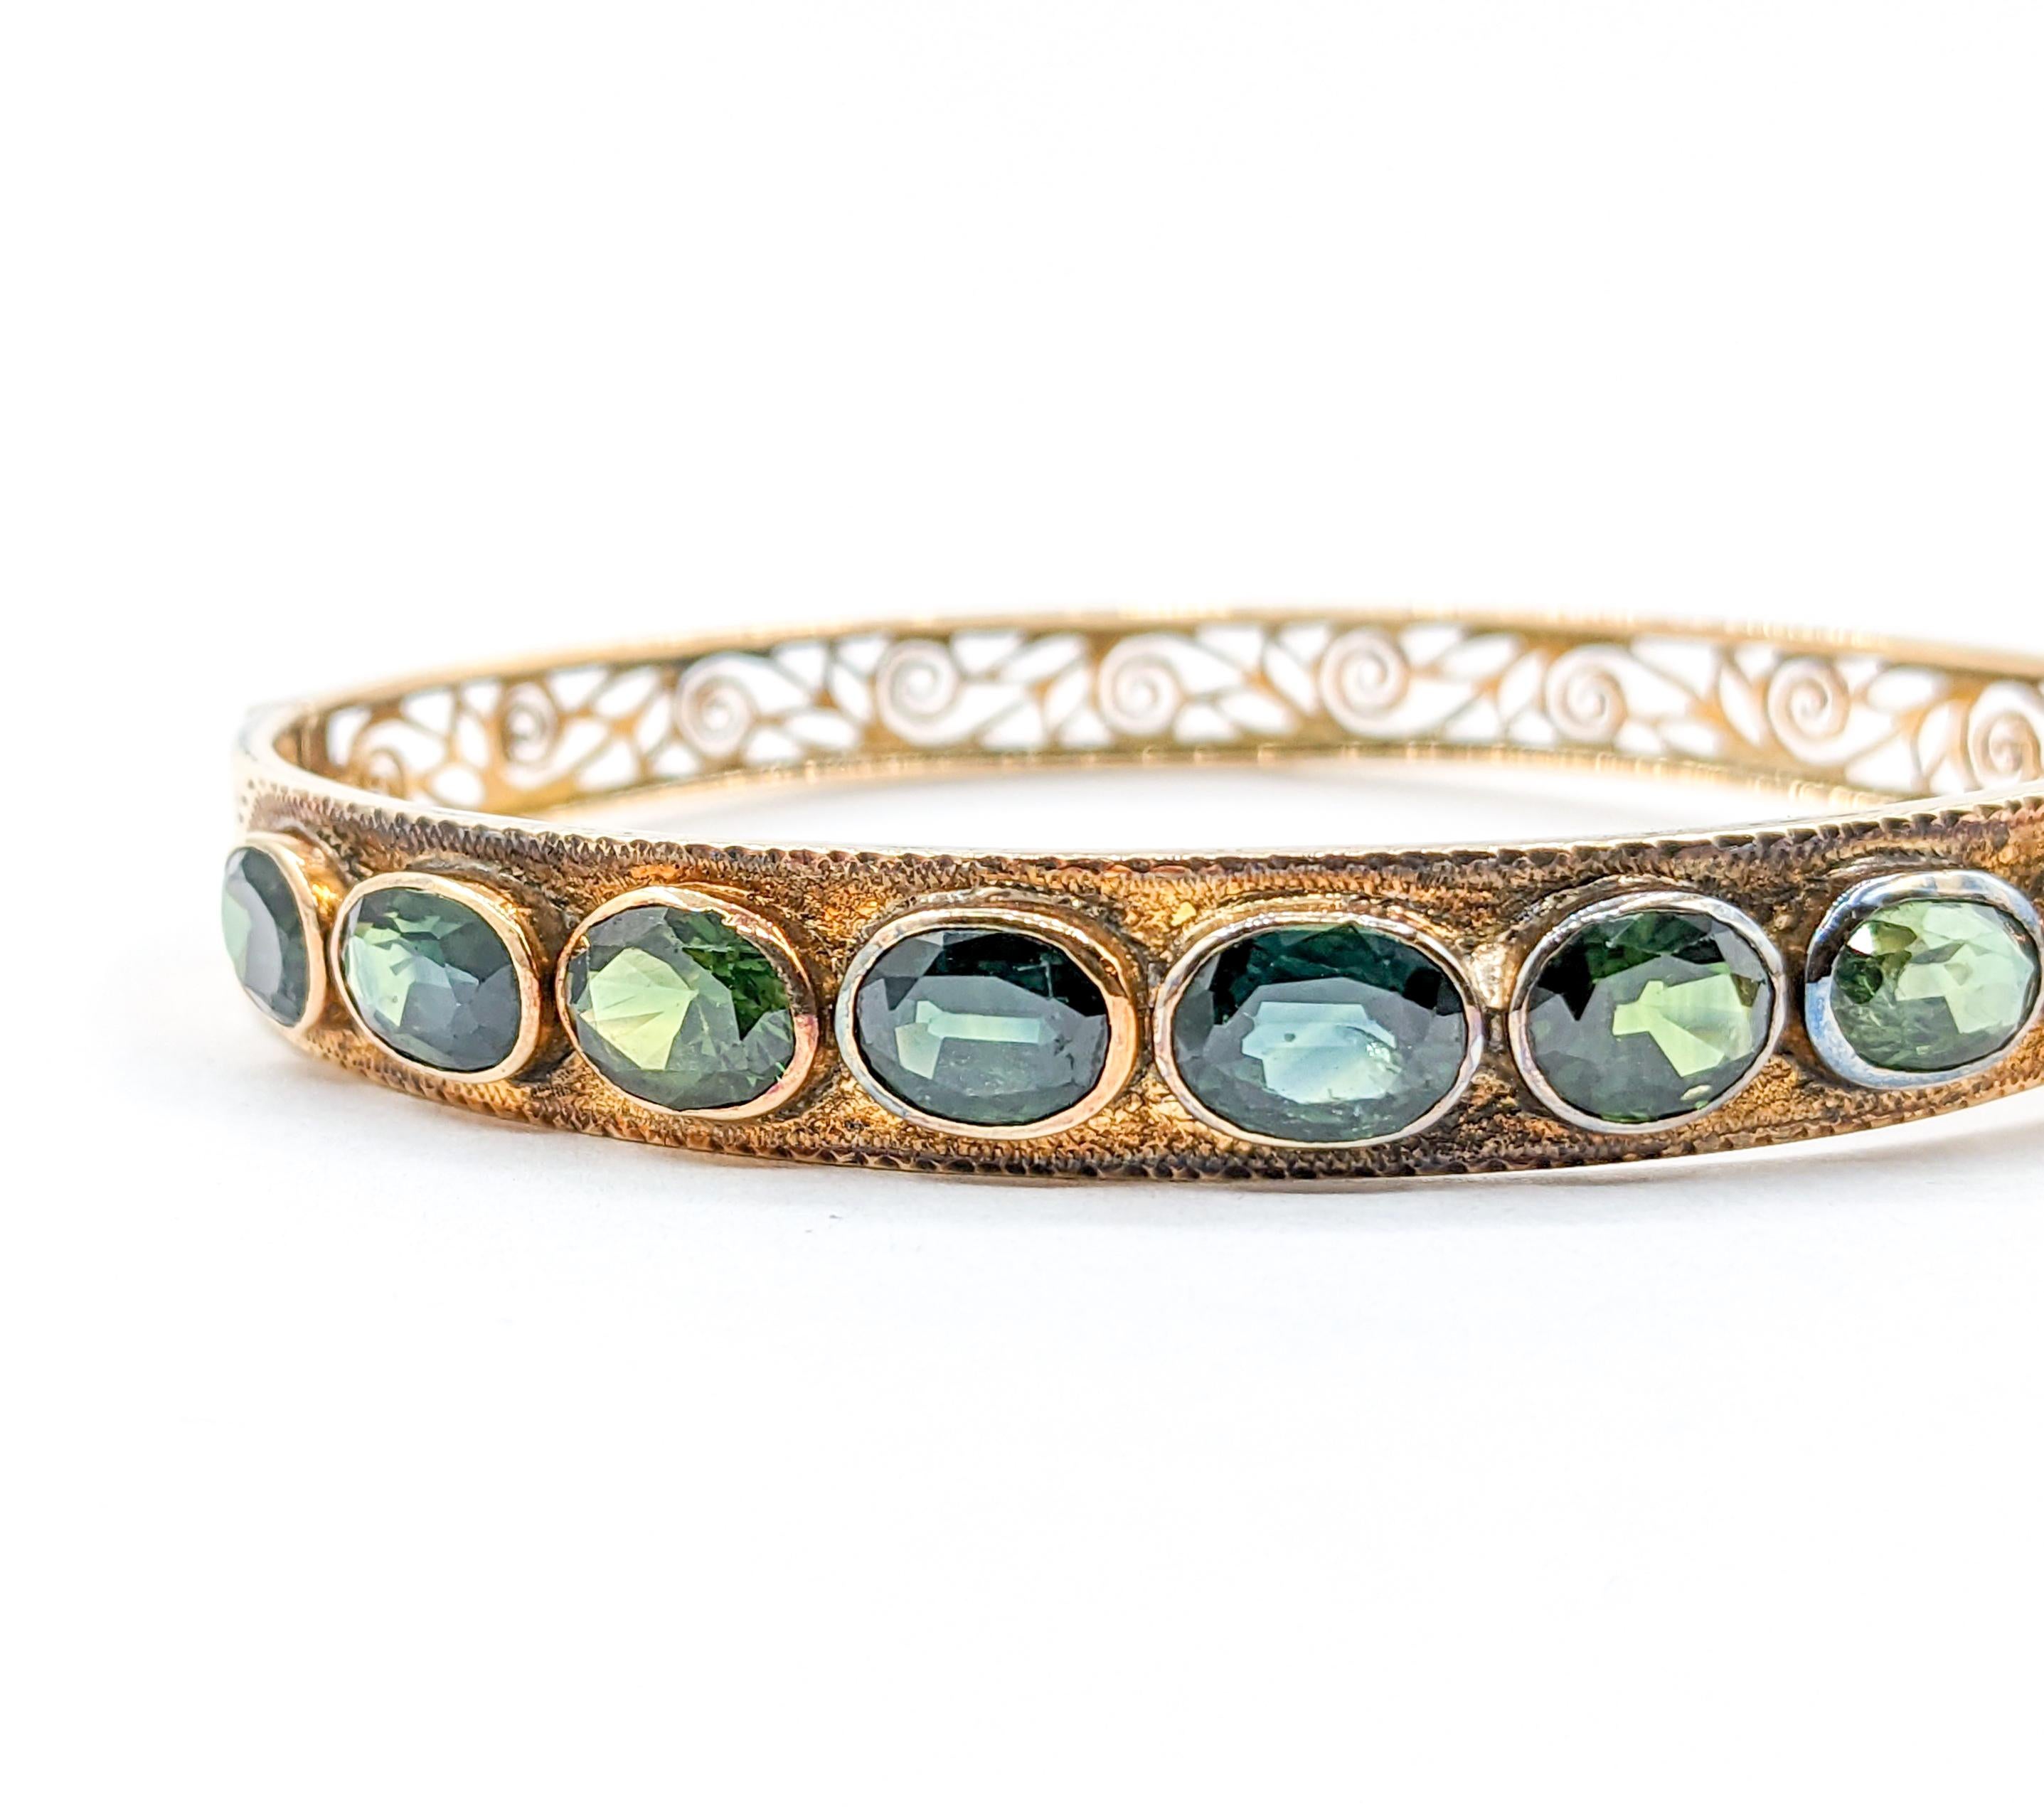 Fabuleux Bracelet 18k 10.1ctw Oval Teal Sapphire Bangle

Vintage By est un magnifique bracelet en saphir vintage, une création magistrale dans le monde de la haute joaillerie. Façonné en or jaune 18 carats, il est orné d'un impressionnant saphir